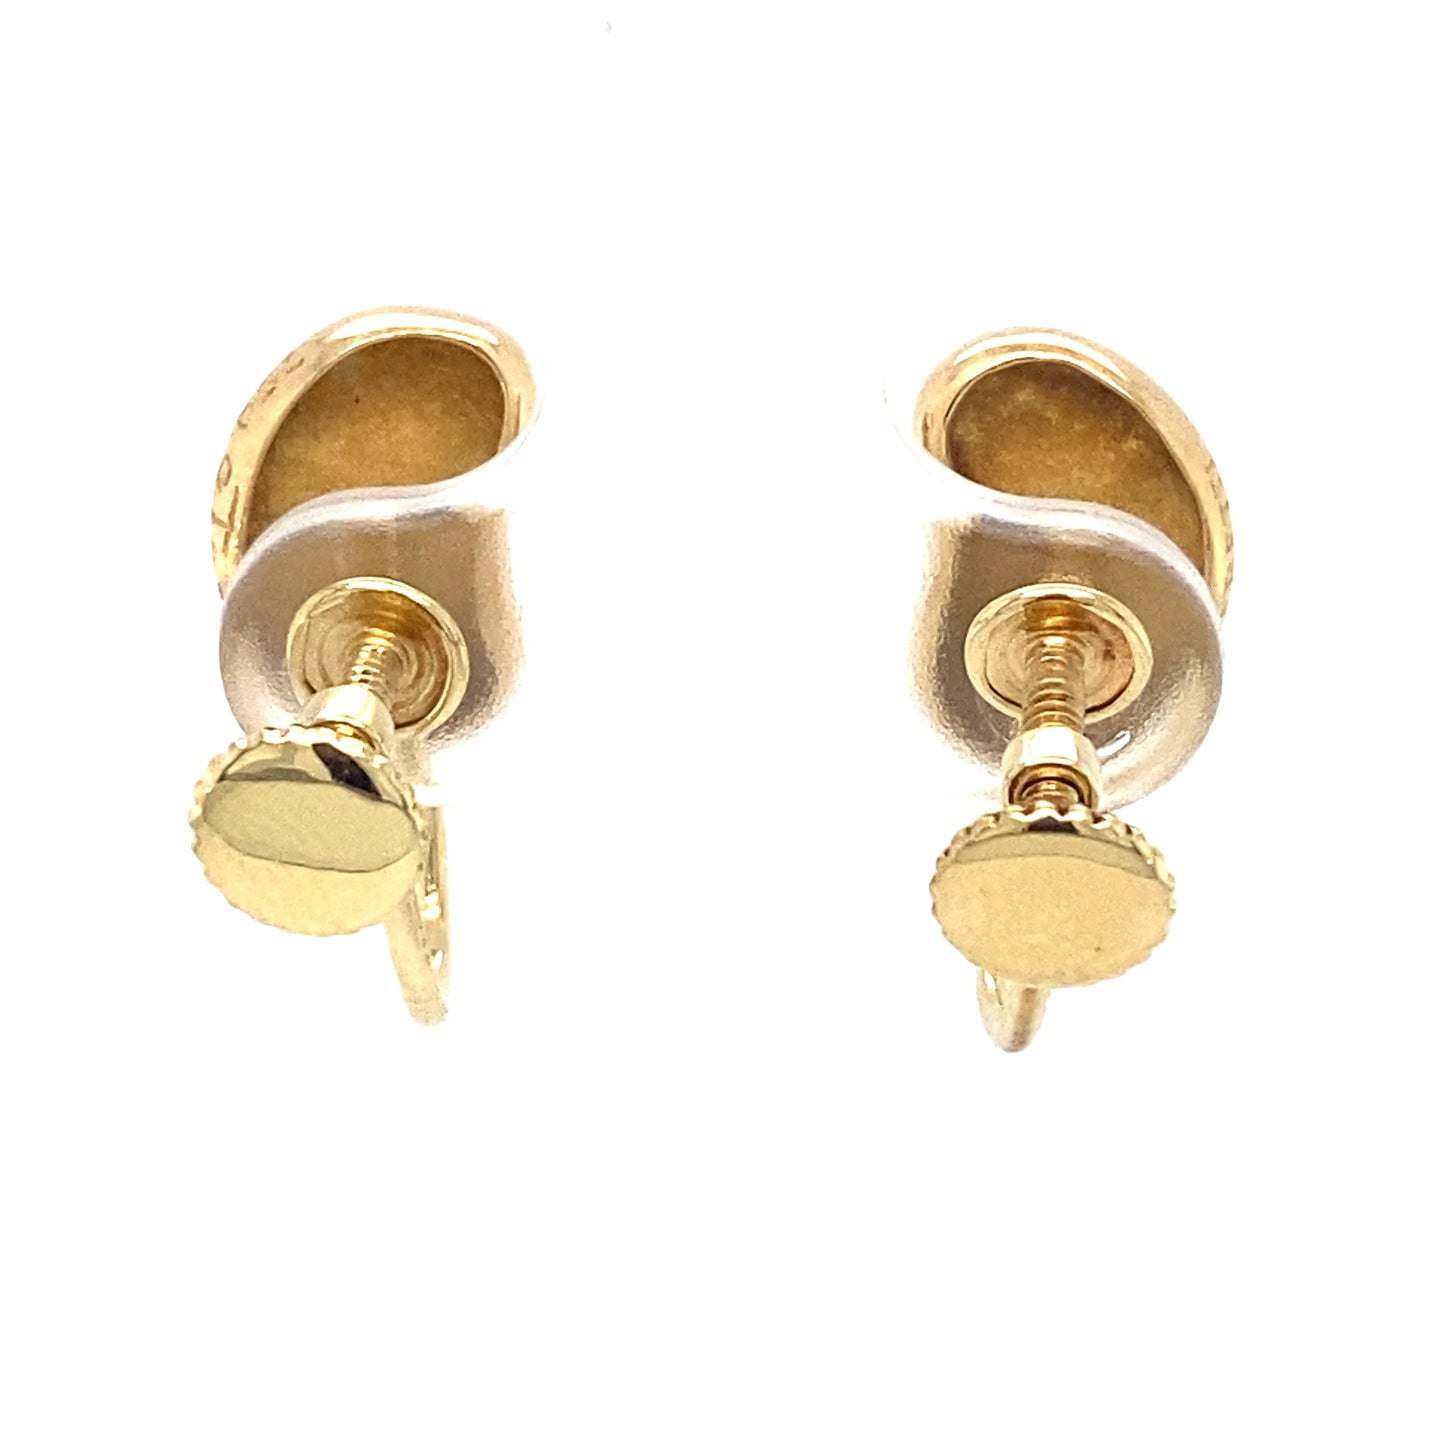 Tiffany & Co. Elsa Peretti Bean Screw Back Non-Pierced Earrings in 18K Gold